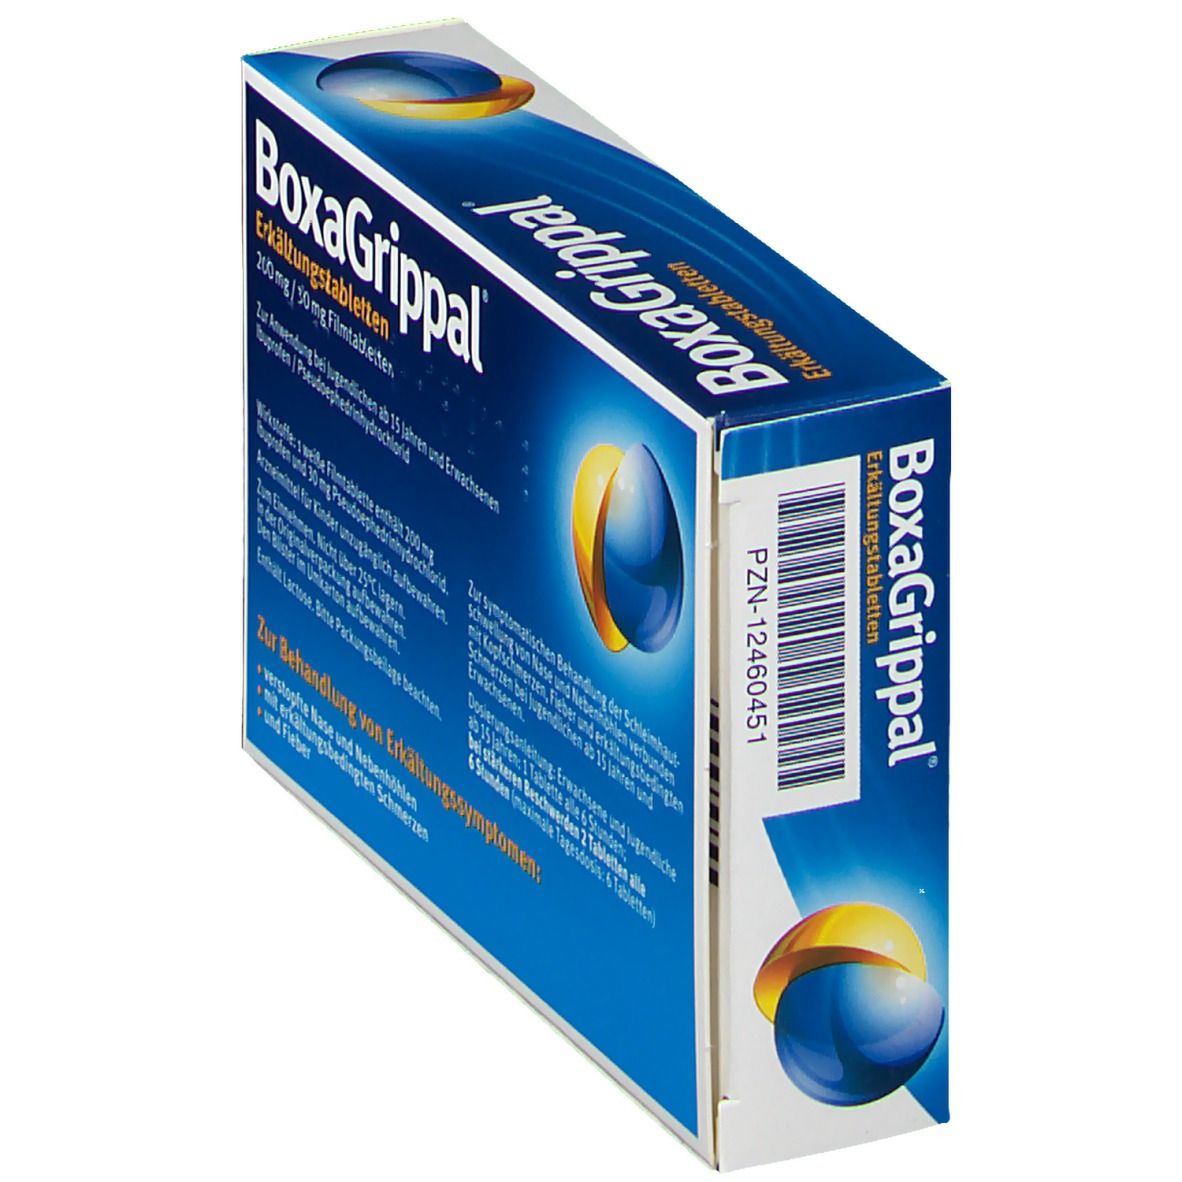 BoxaGrippal® Erkältungstabletten 200 mg / 30 mg